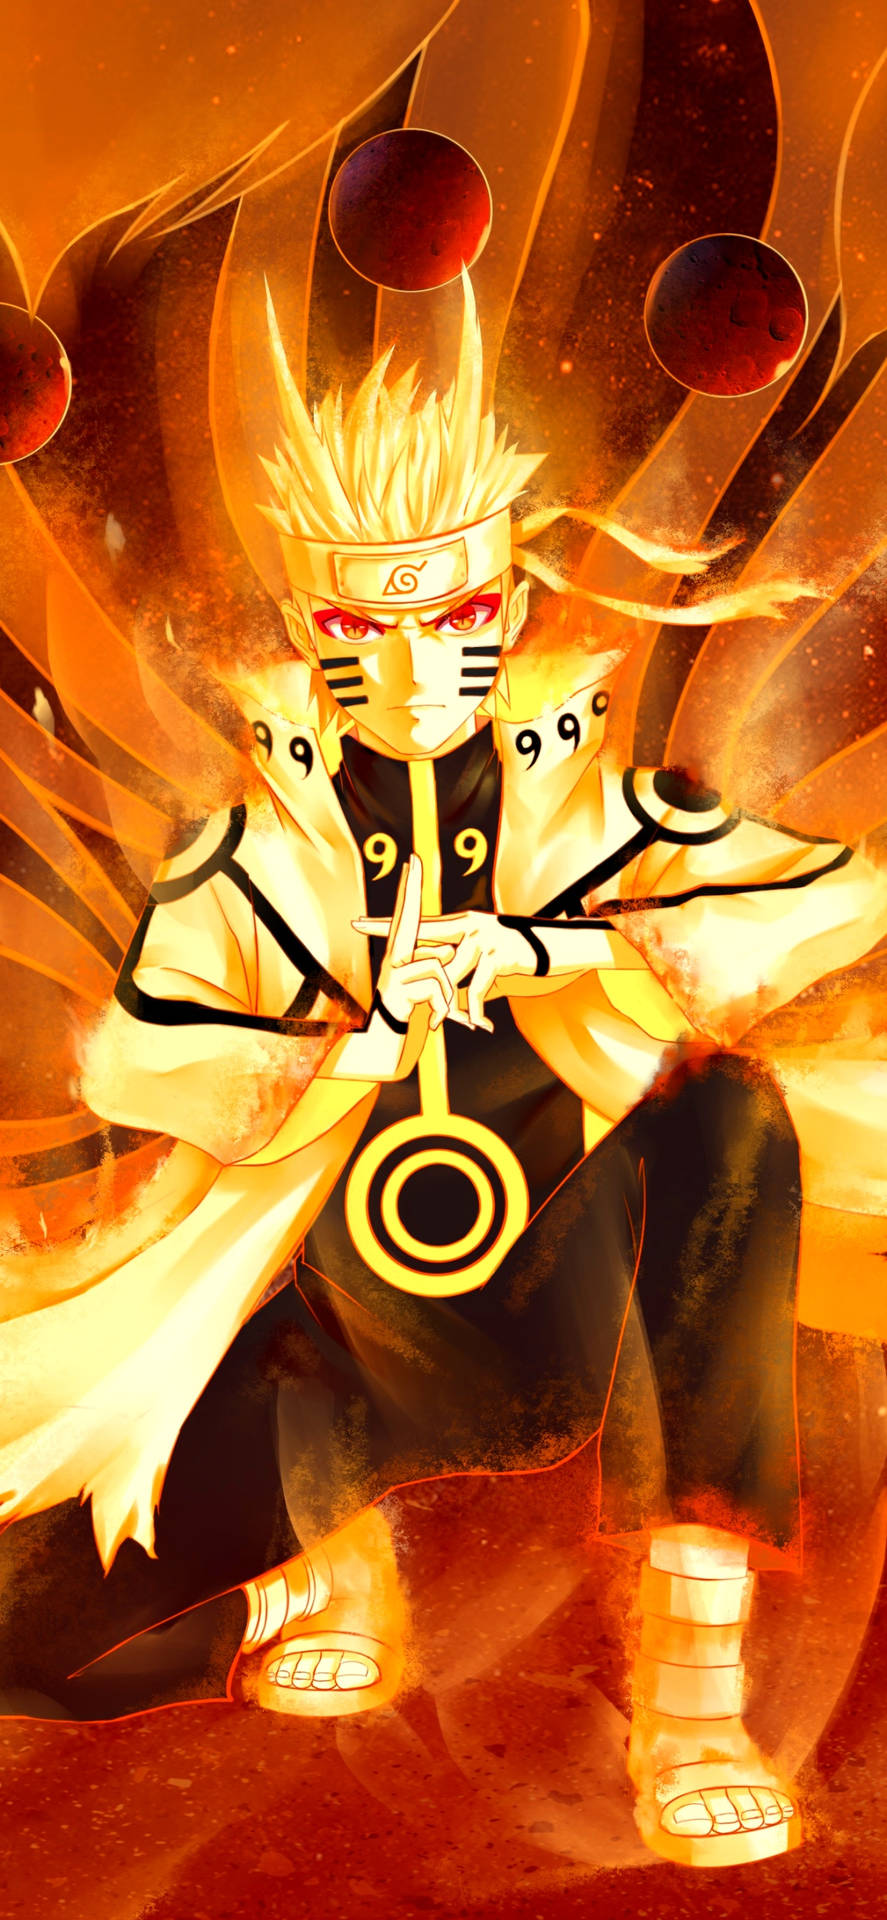 Mostreseu Espírito Ardente Com Um Papel De Parede Amarelo Do Naruto. Papel de Parede